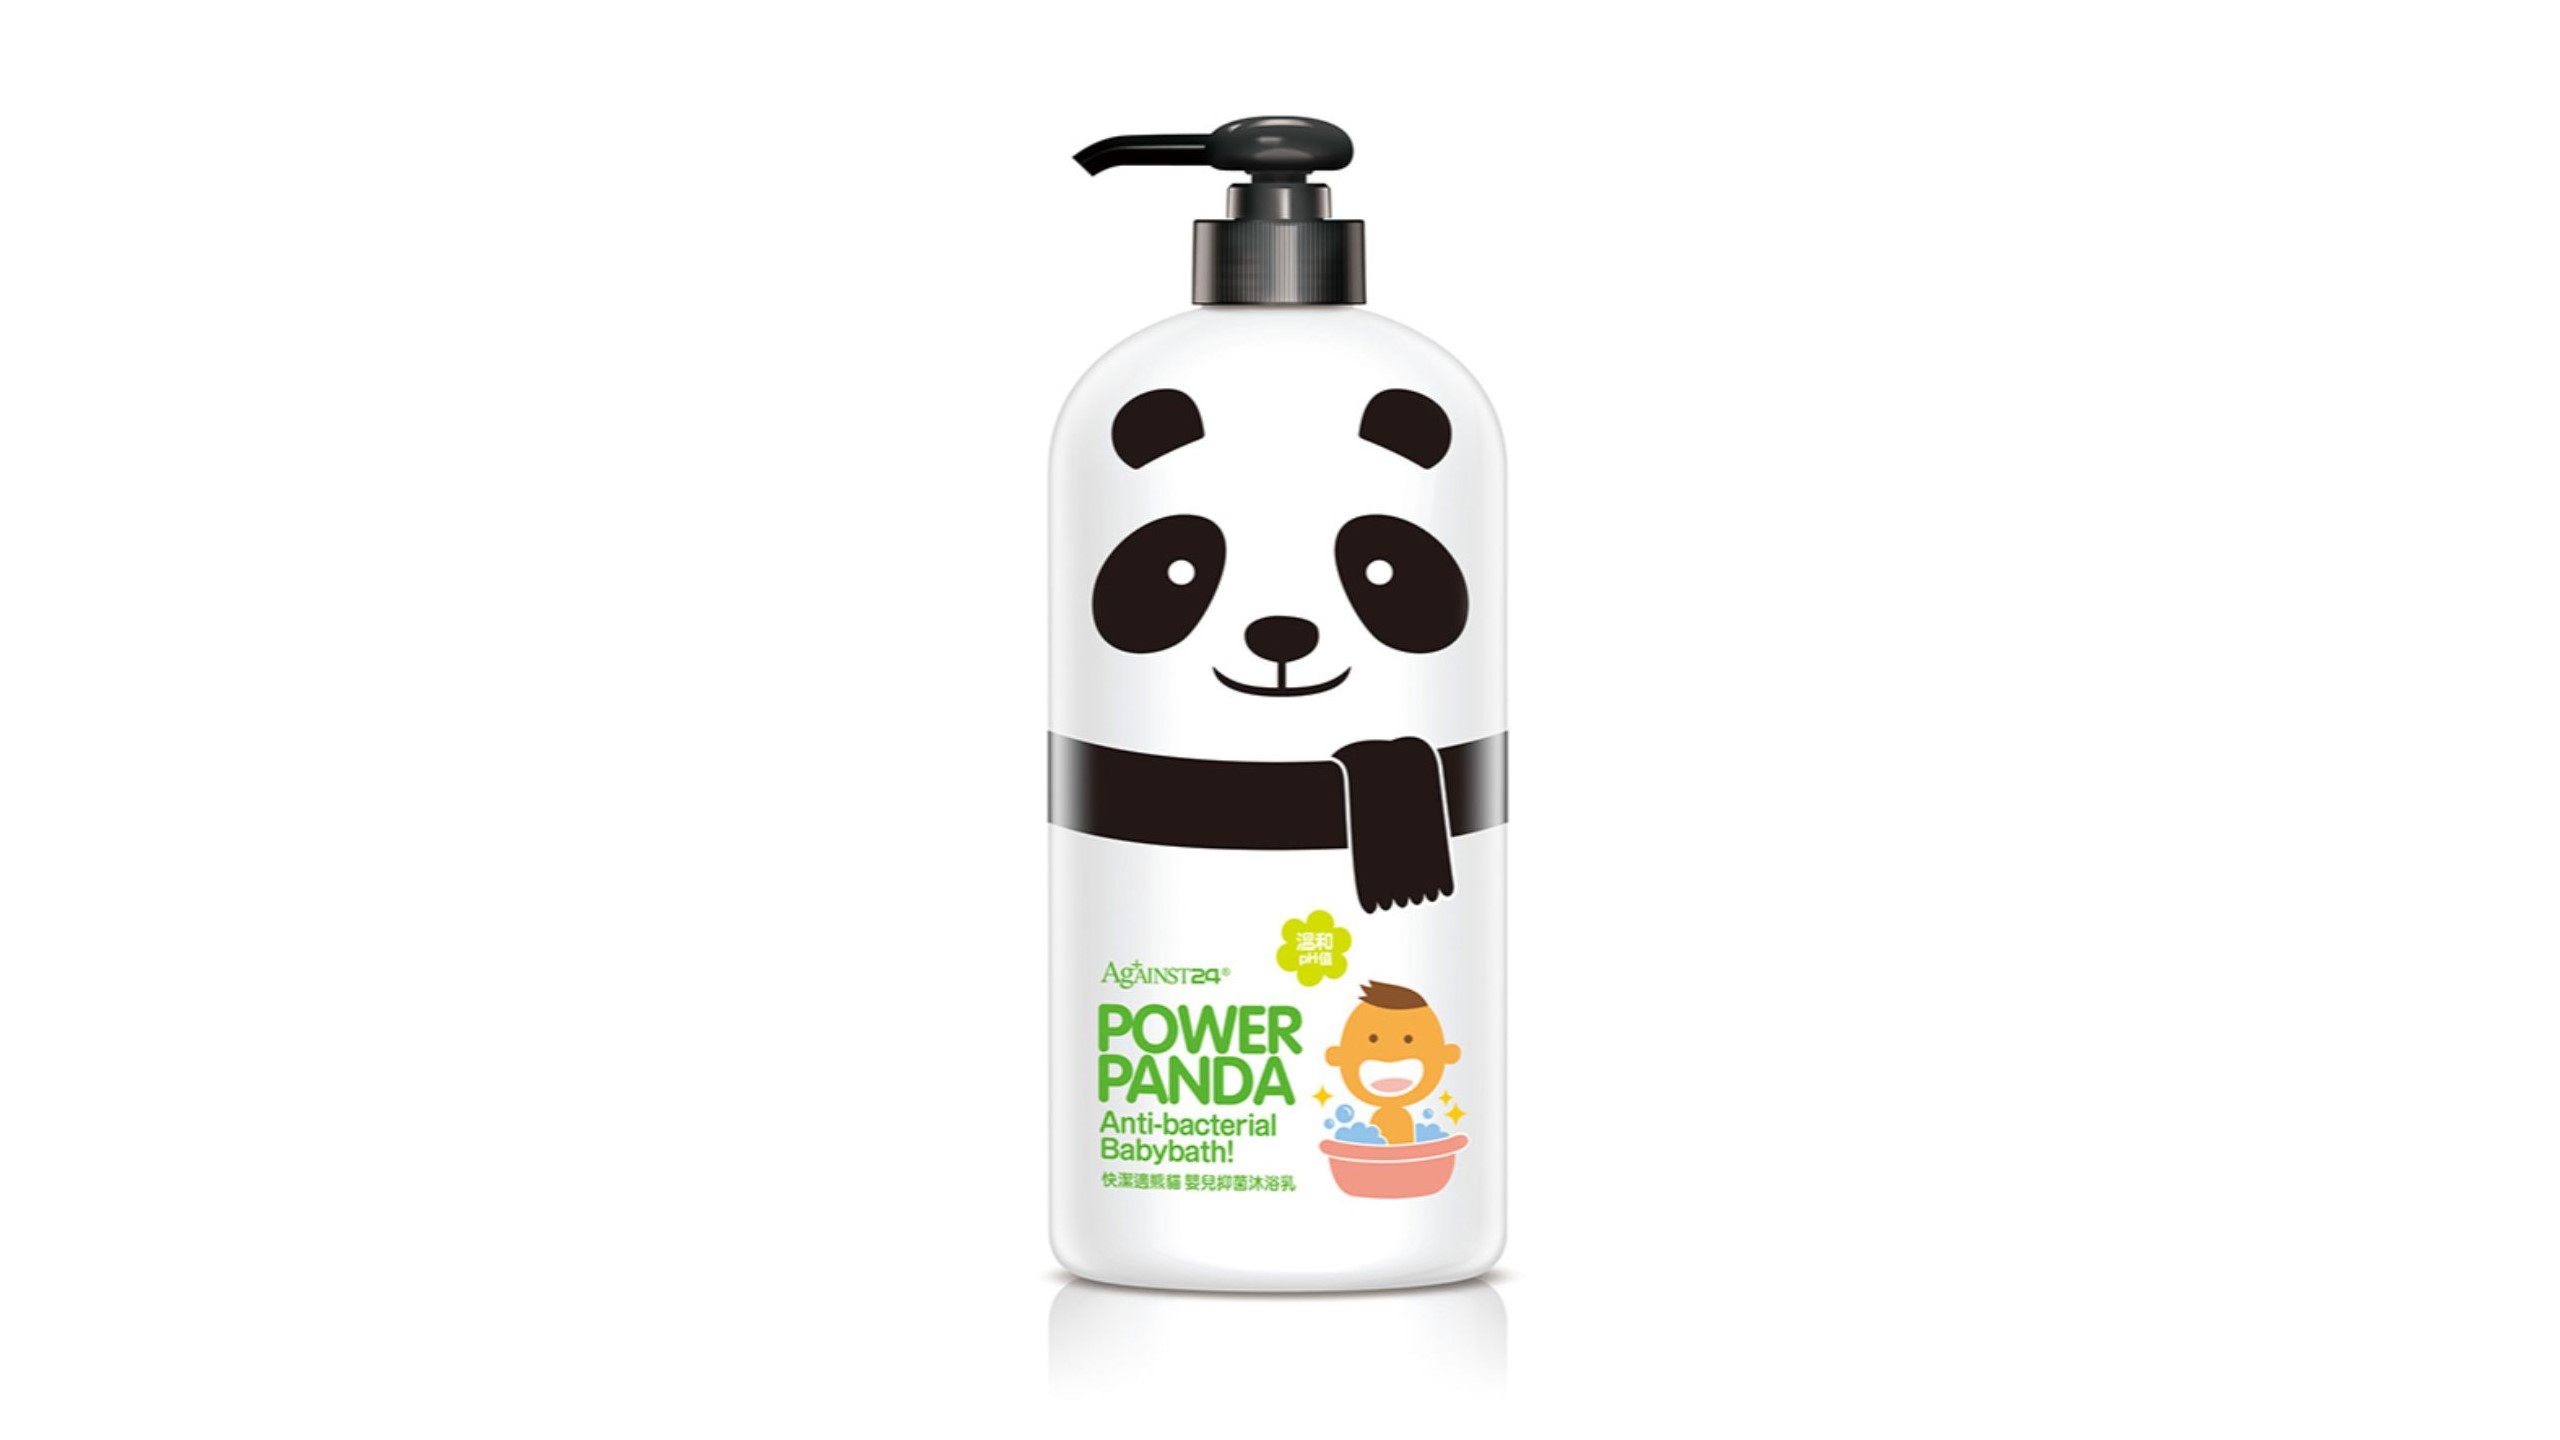 baby-fair Against24 Power Panda Anti-Bacterial Babybath 650ml